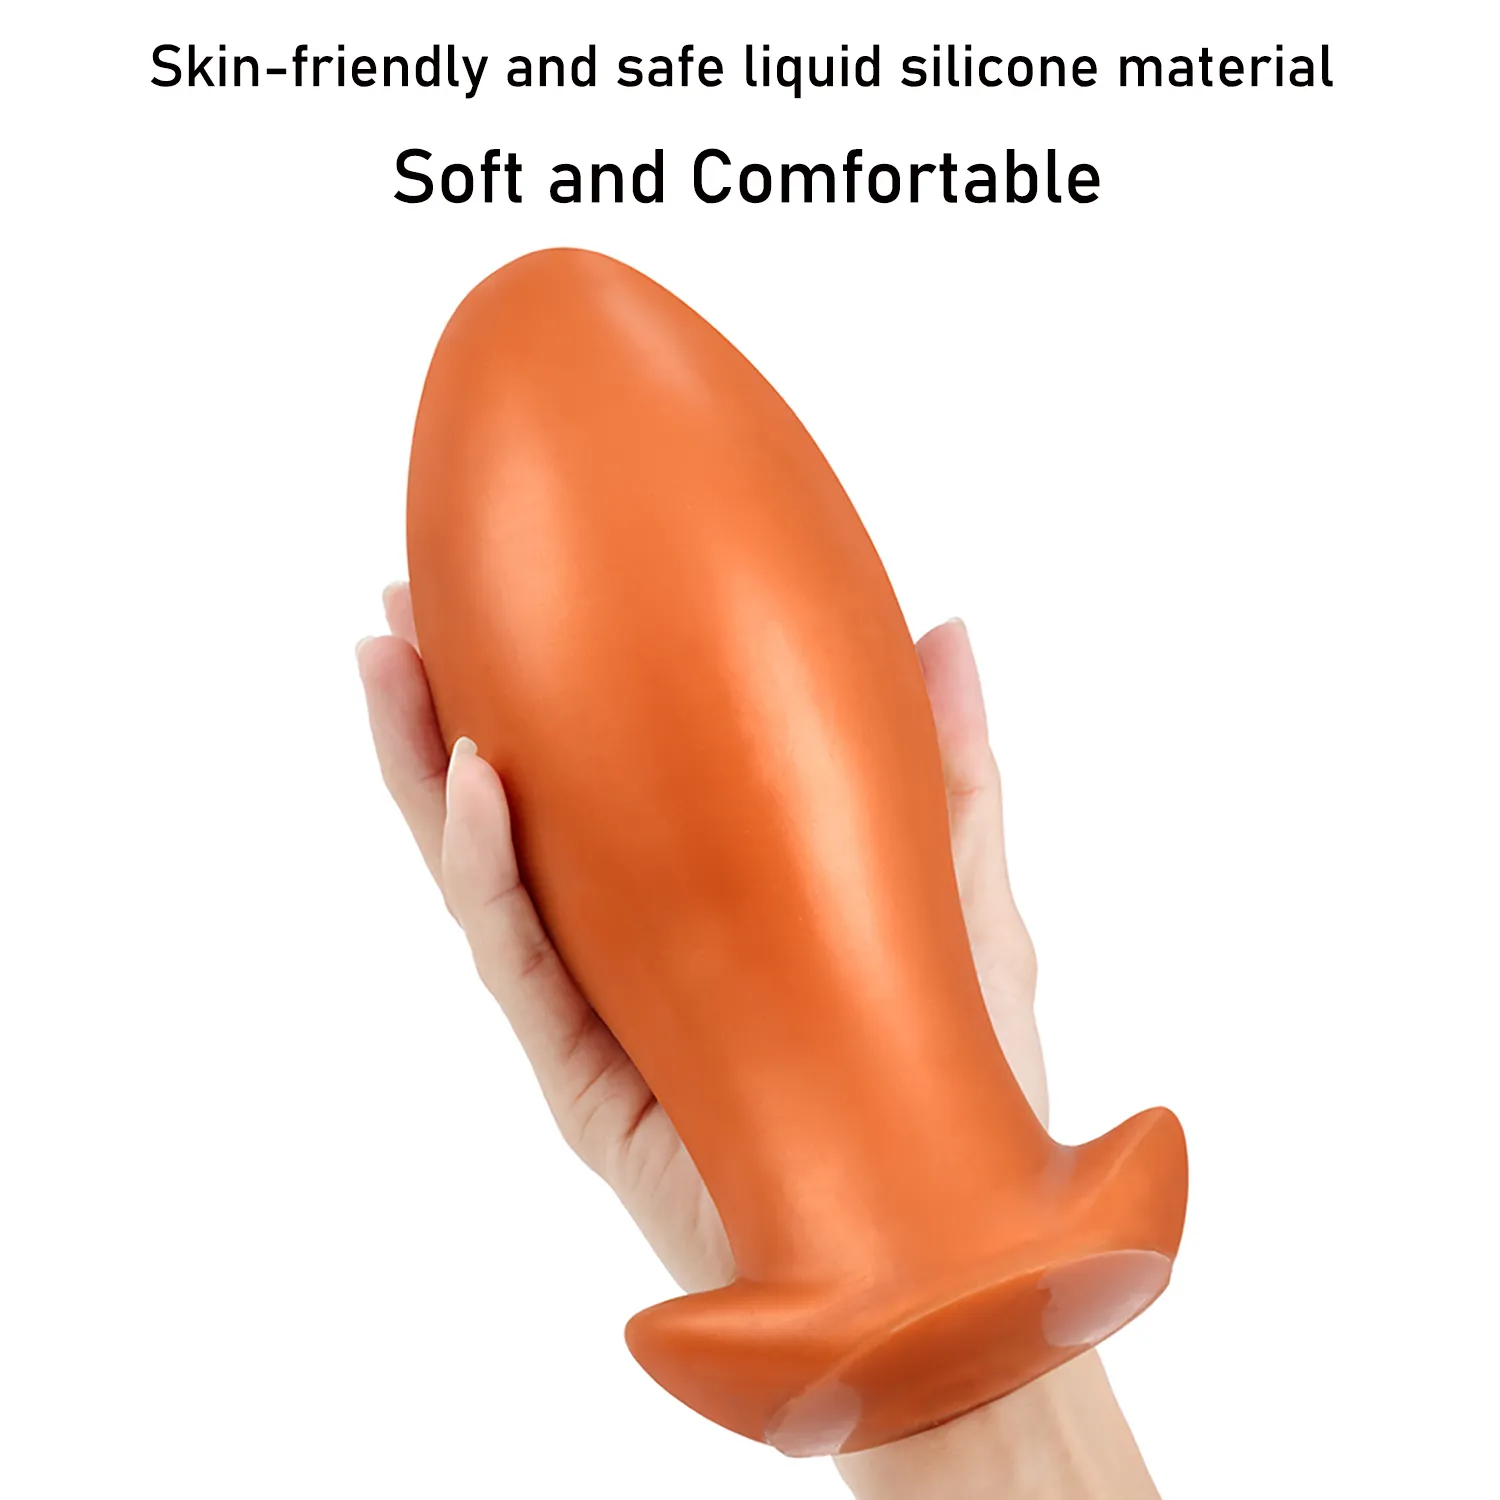 Zachte Vloeibare Siliconen Oversized Eivorm Anale Plug Dildo Grote Dilatator Butt Stimuleren Anus sexy Speelgoed voor Vrouwen Mannen BDSM